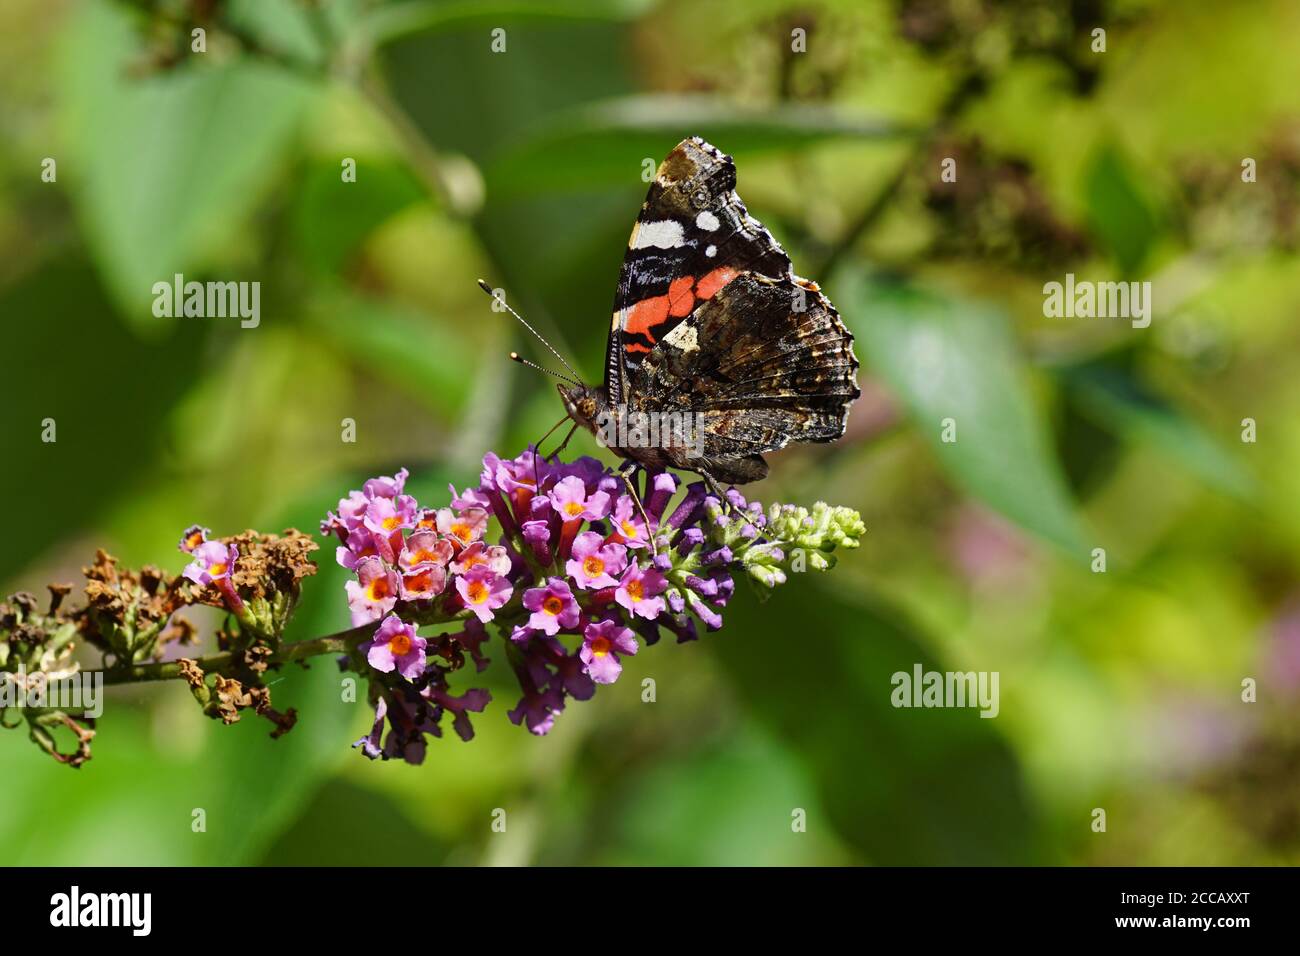 Rouge amiral ou rouge admirable (Vanessa atalanta), famille des Nymphalidae sur les fleurs d'un lilas d'été (Buddleja davidi). En été dans un jardin hollandais. Banque D'Images